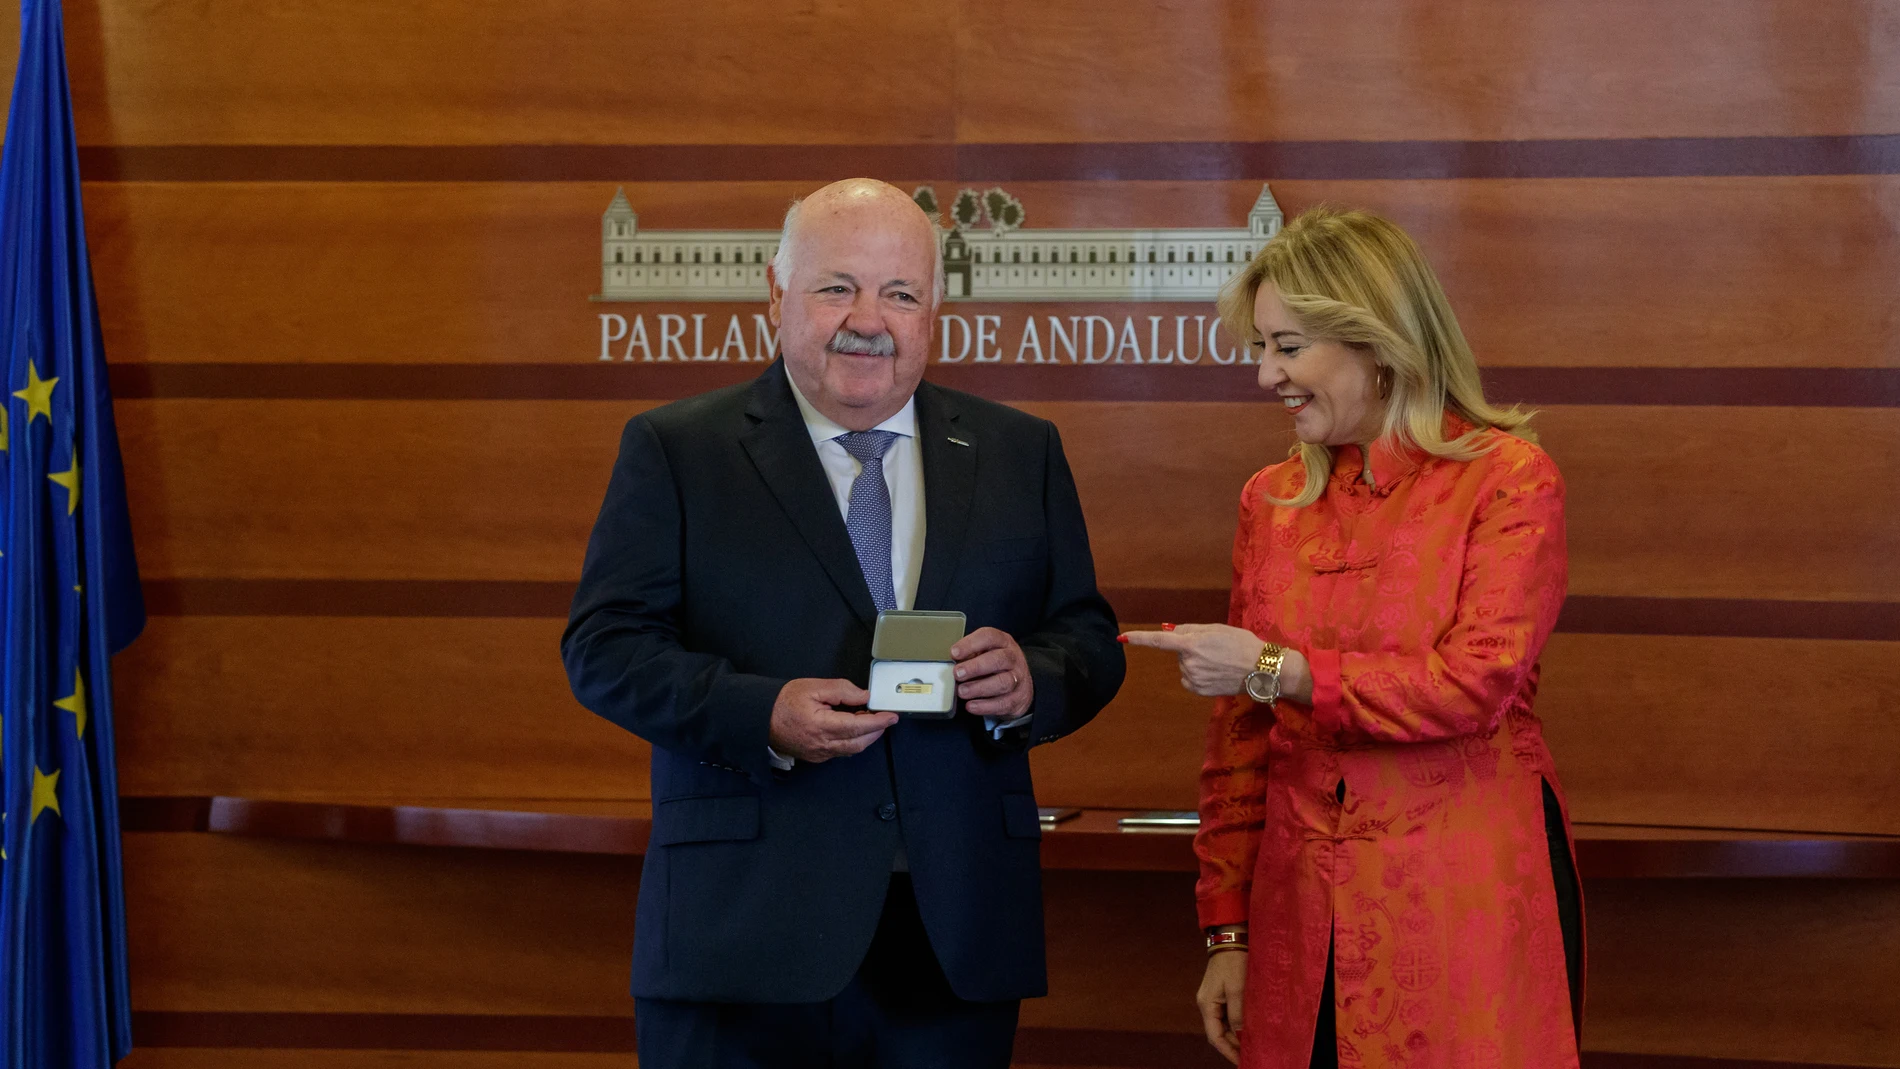 El presidente del Parlamento de Andalucía, Jesús Aguirre, recibe el proyecto de Ley del Presupuesto de la Comunidad Autónoma de Andalucía para el año 2023 de manos de la consejera de Economía, Hacienda y Fondos Europeos, Carolina España